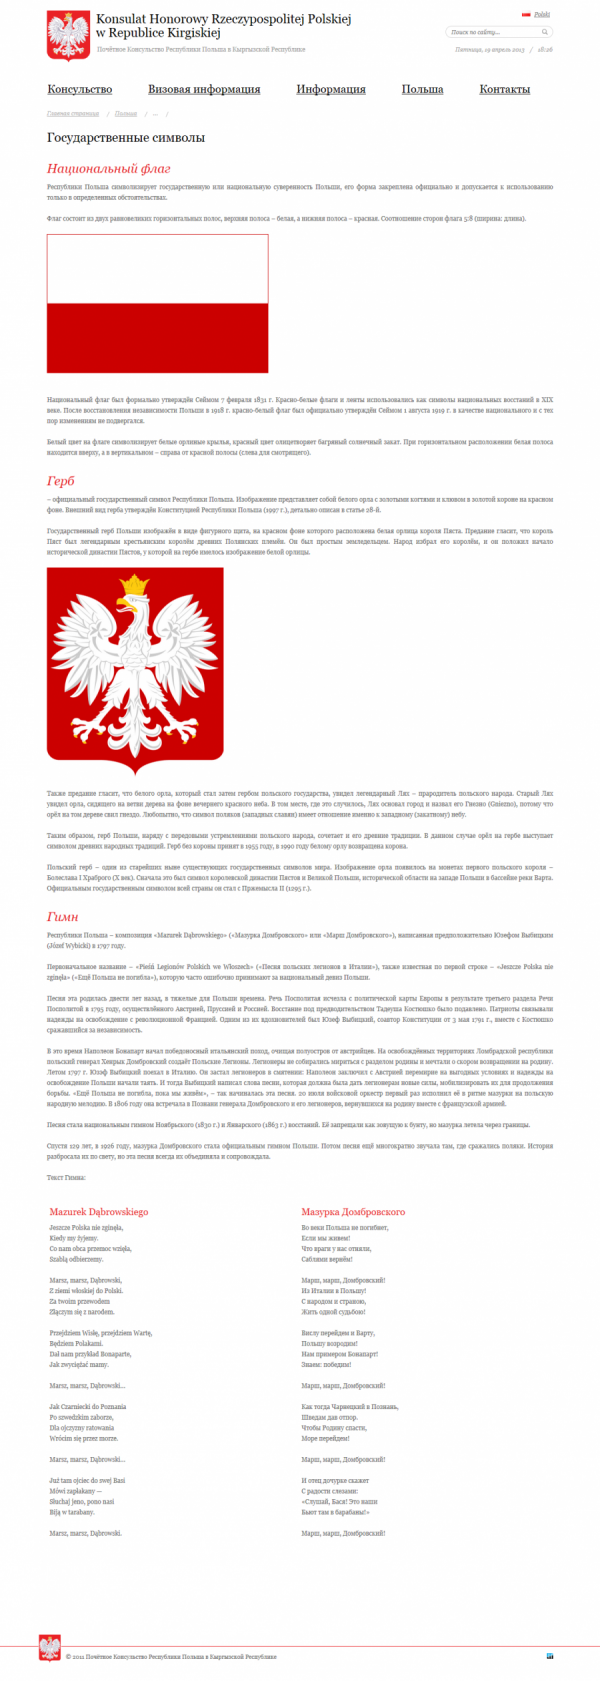 Почётное Консульство Республики Польша в Кыргызской Республике